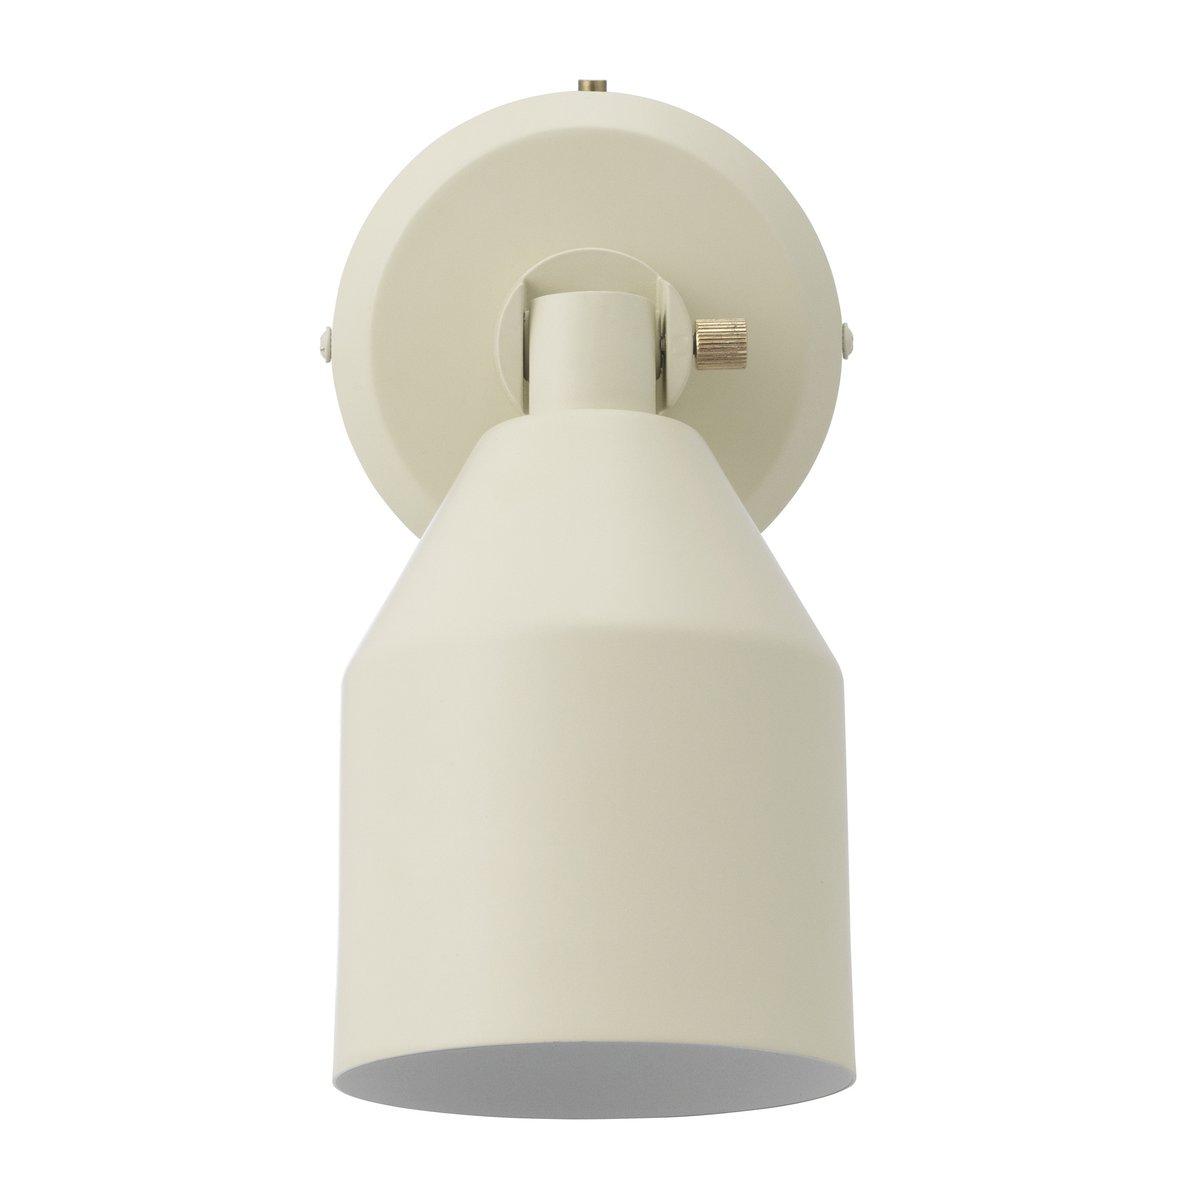 8: Normann Copenhagen Klip væglampe 15,8x24,3 cm Warm Grey